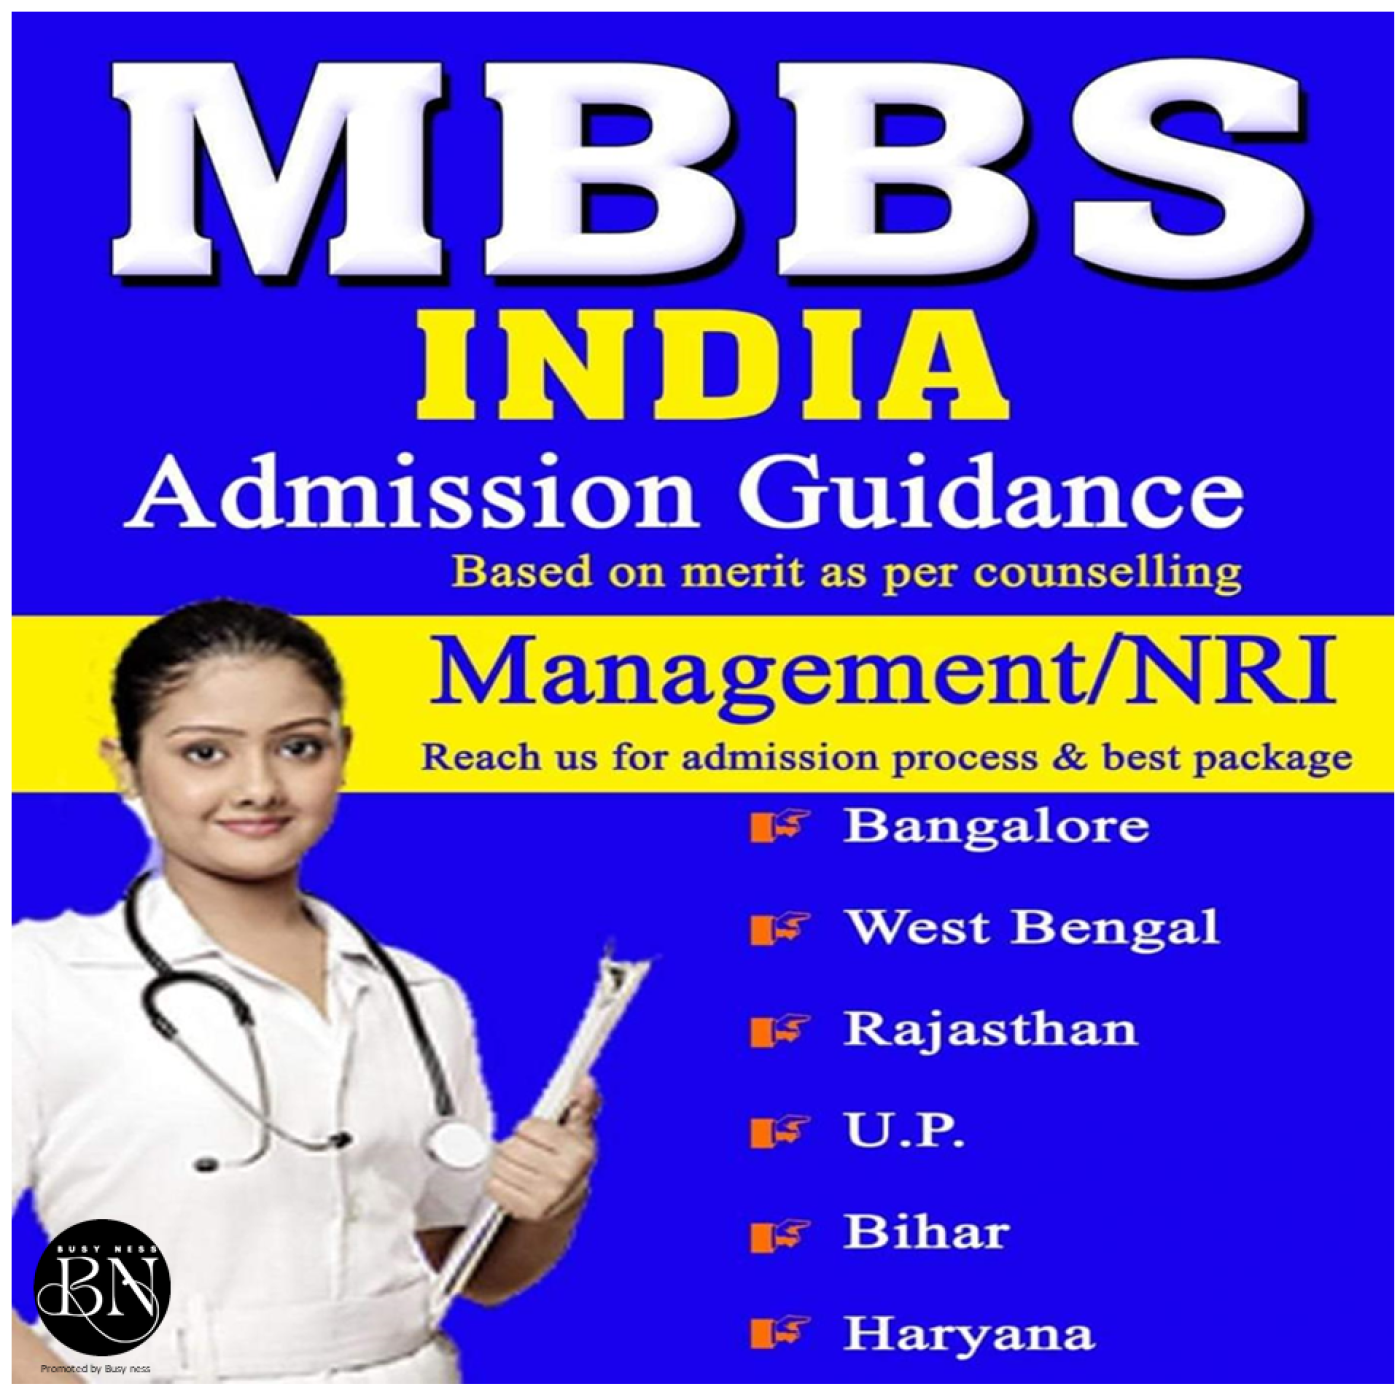 SB Education Abroad MBBS, Varanasi